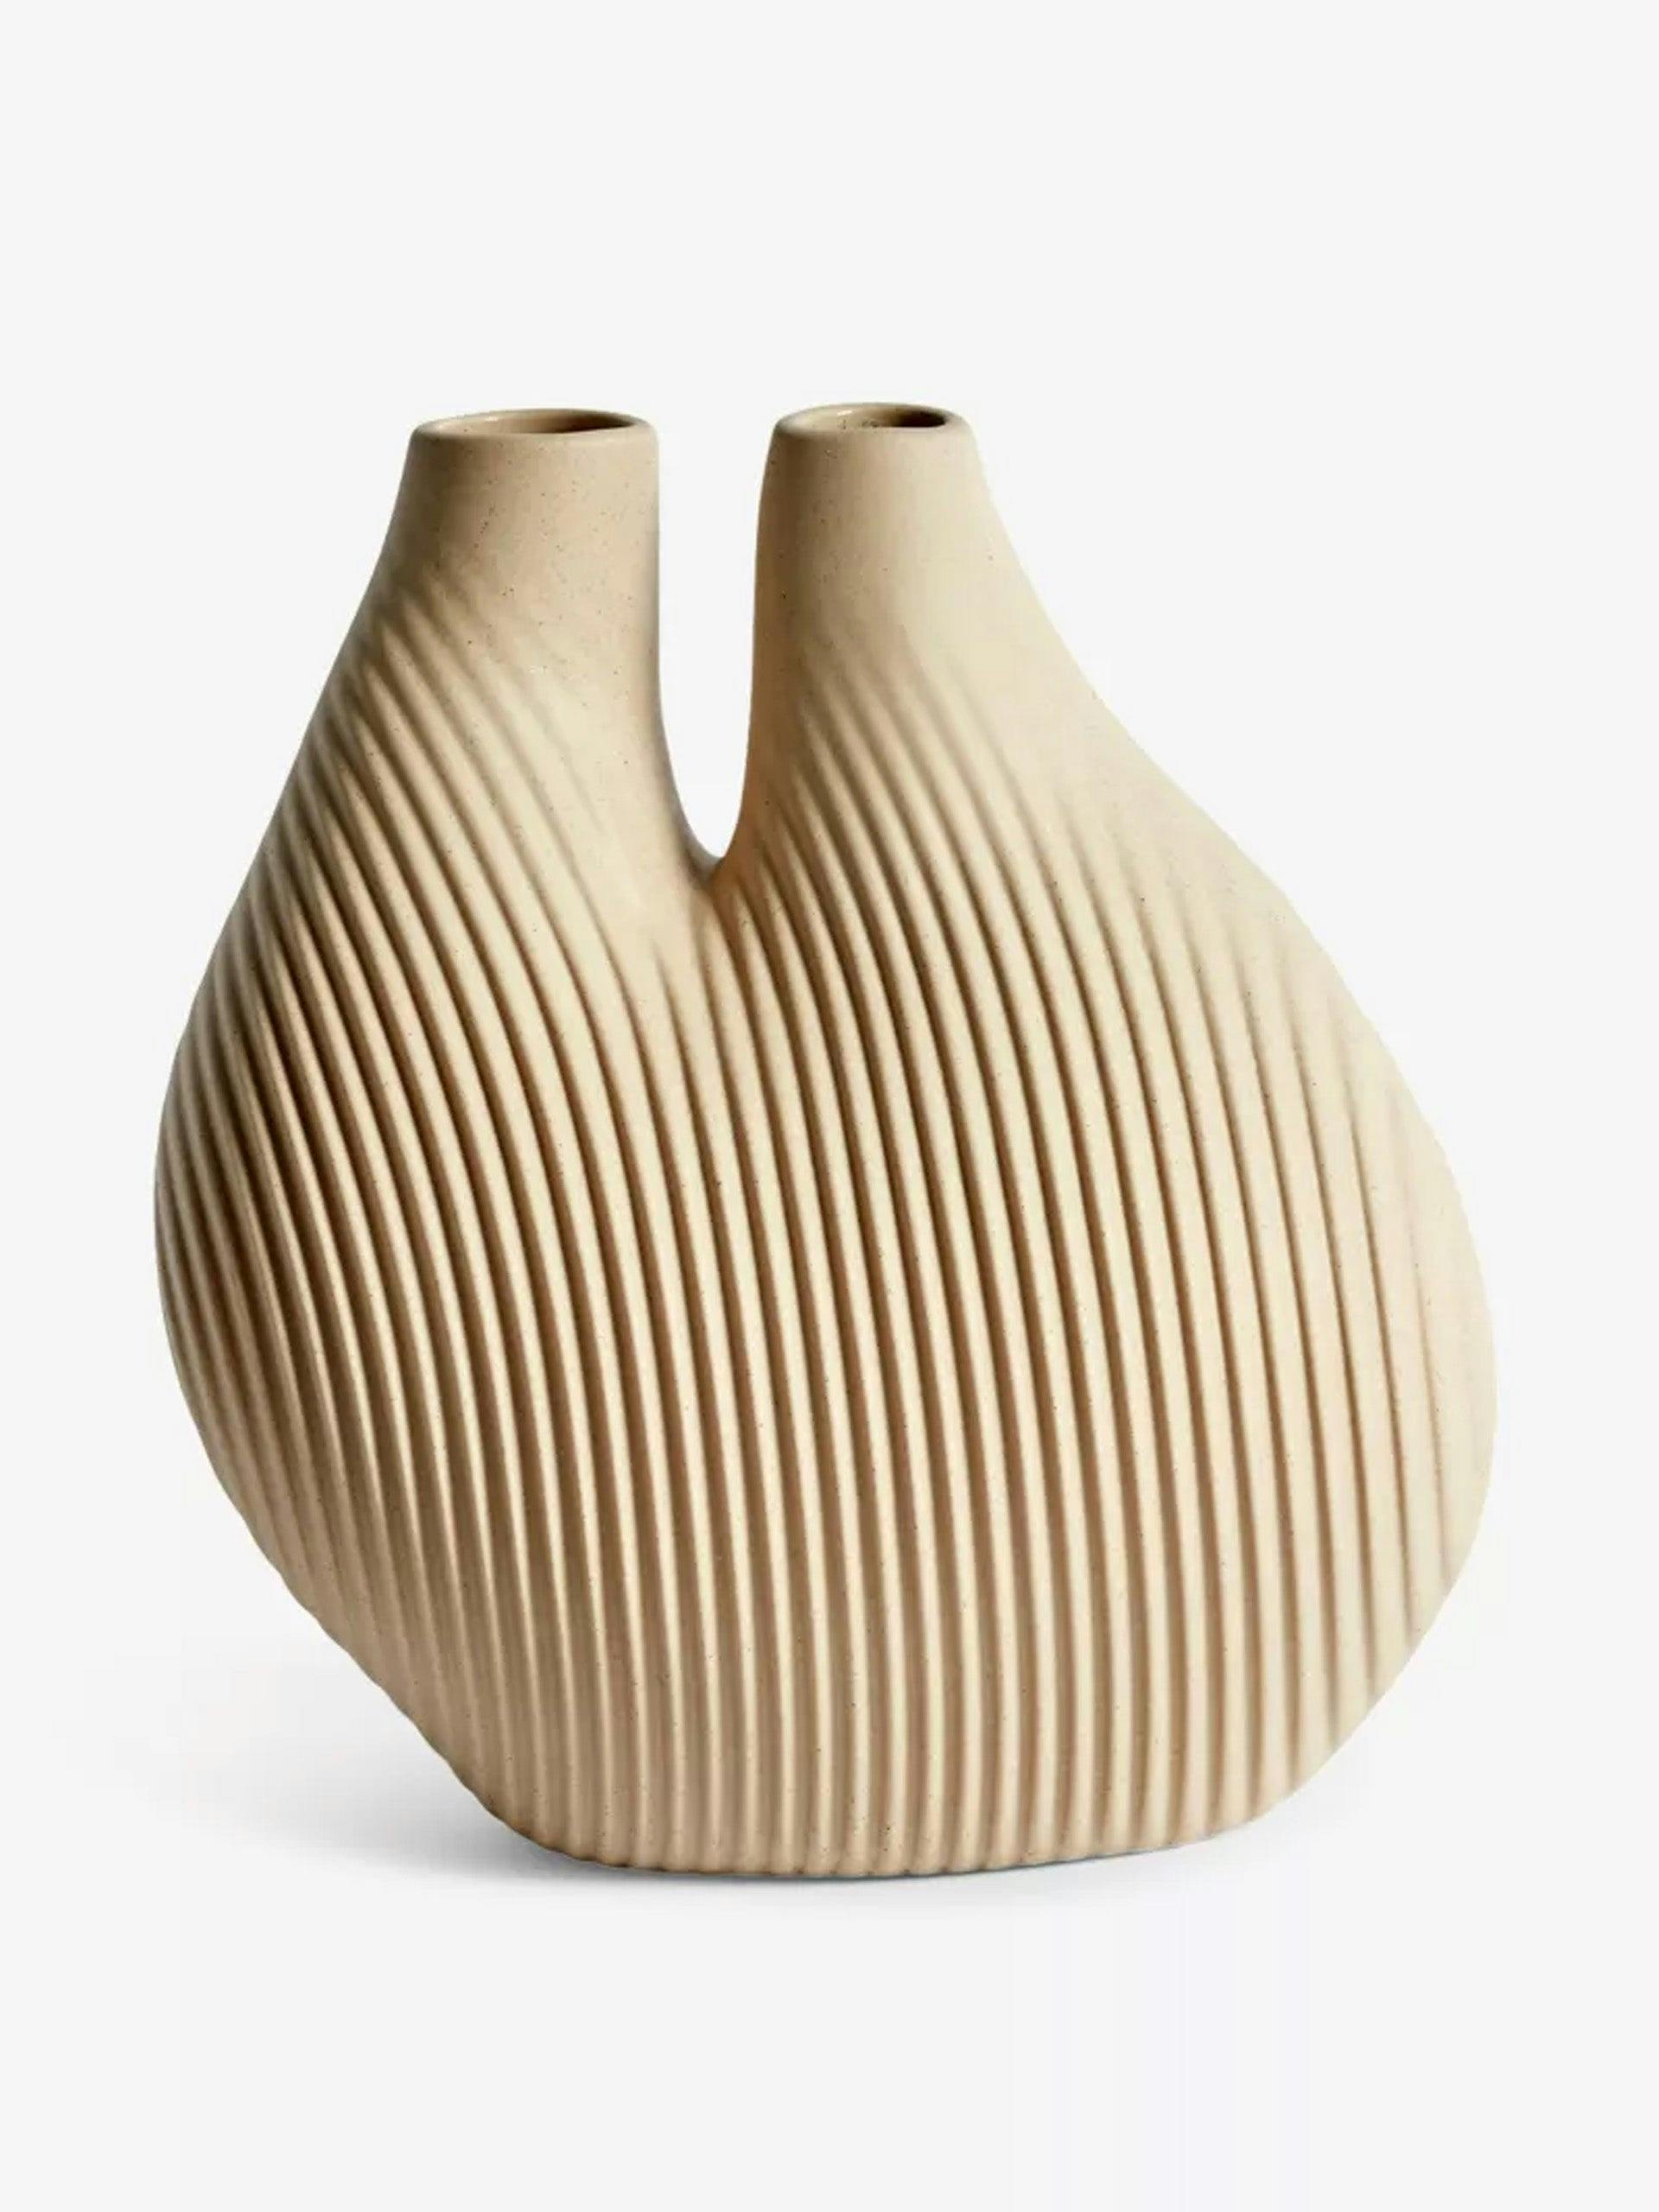 Wang & Söderström chamber porcelain vase